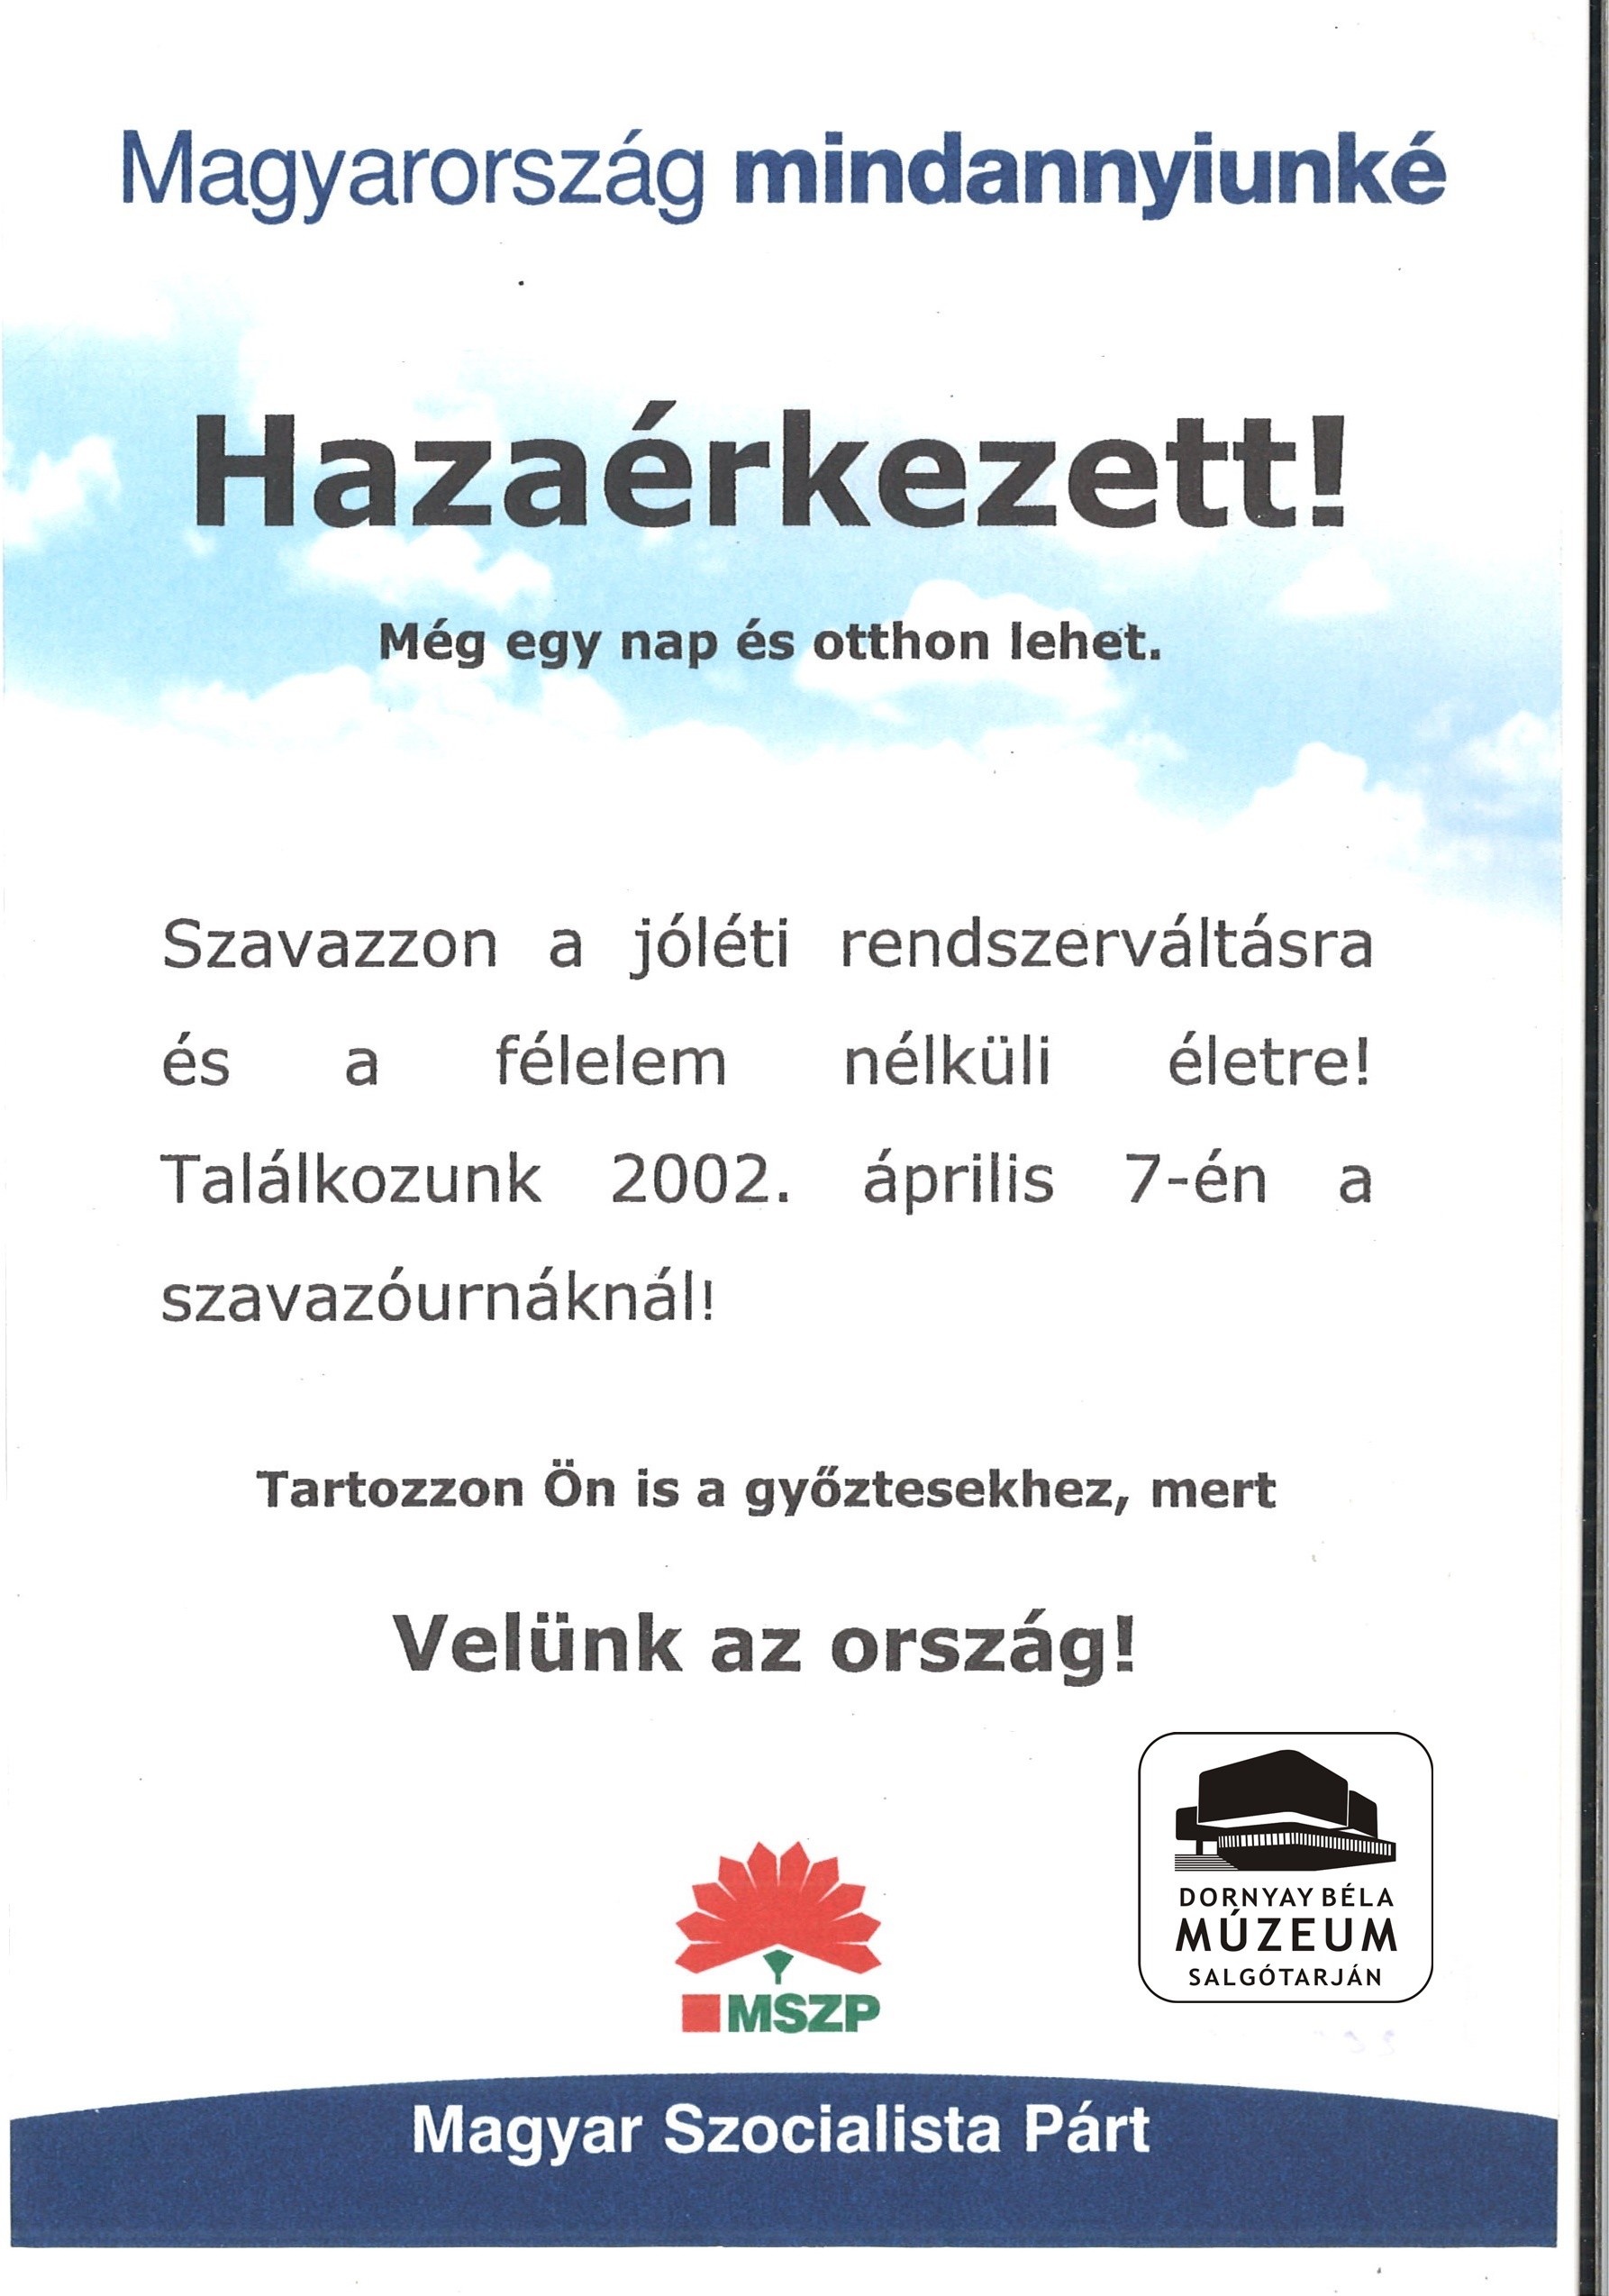 MSZP szavazásra buzdító röplap (Dornyay Béla Múzeum, Salgótarján CC BY-NC-SA)